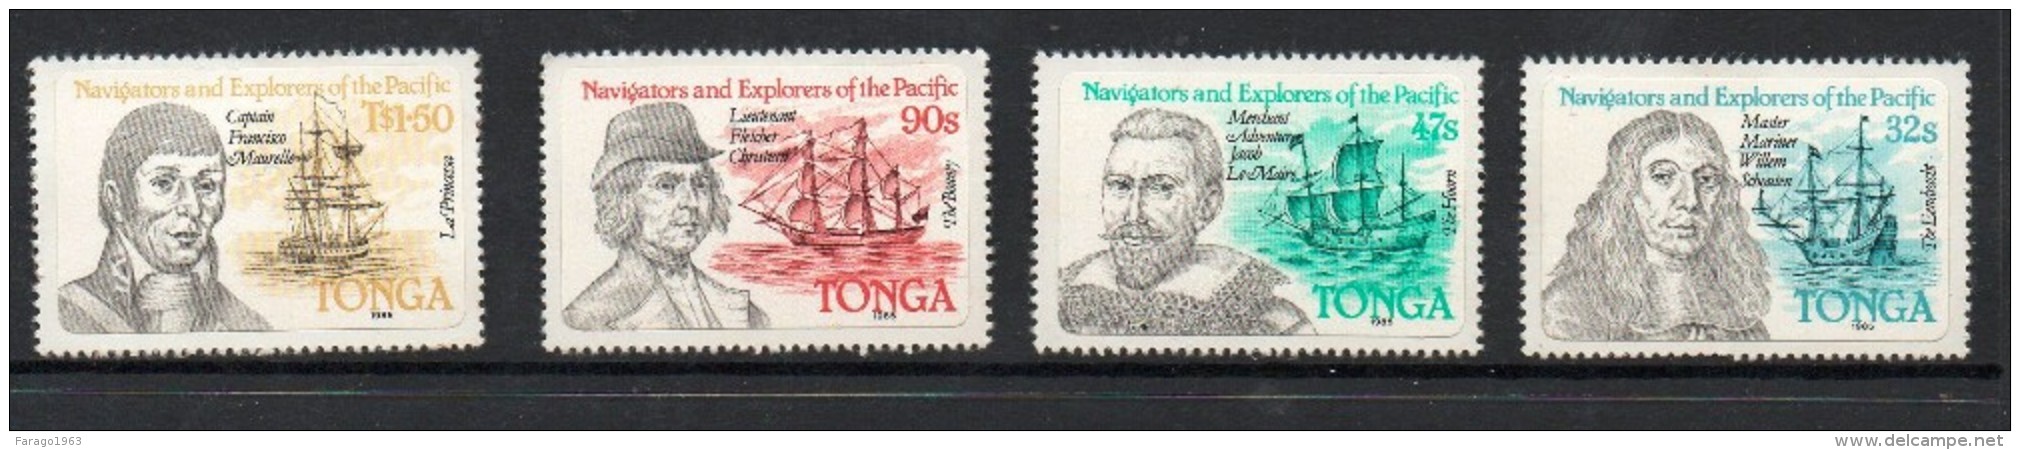 1985 Tonga Explorers  Complete Set Of 4  MNH - Tonga (1970-...)